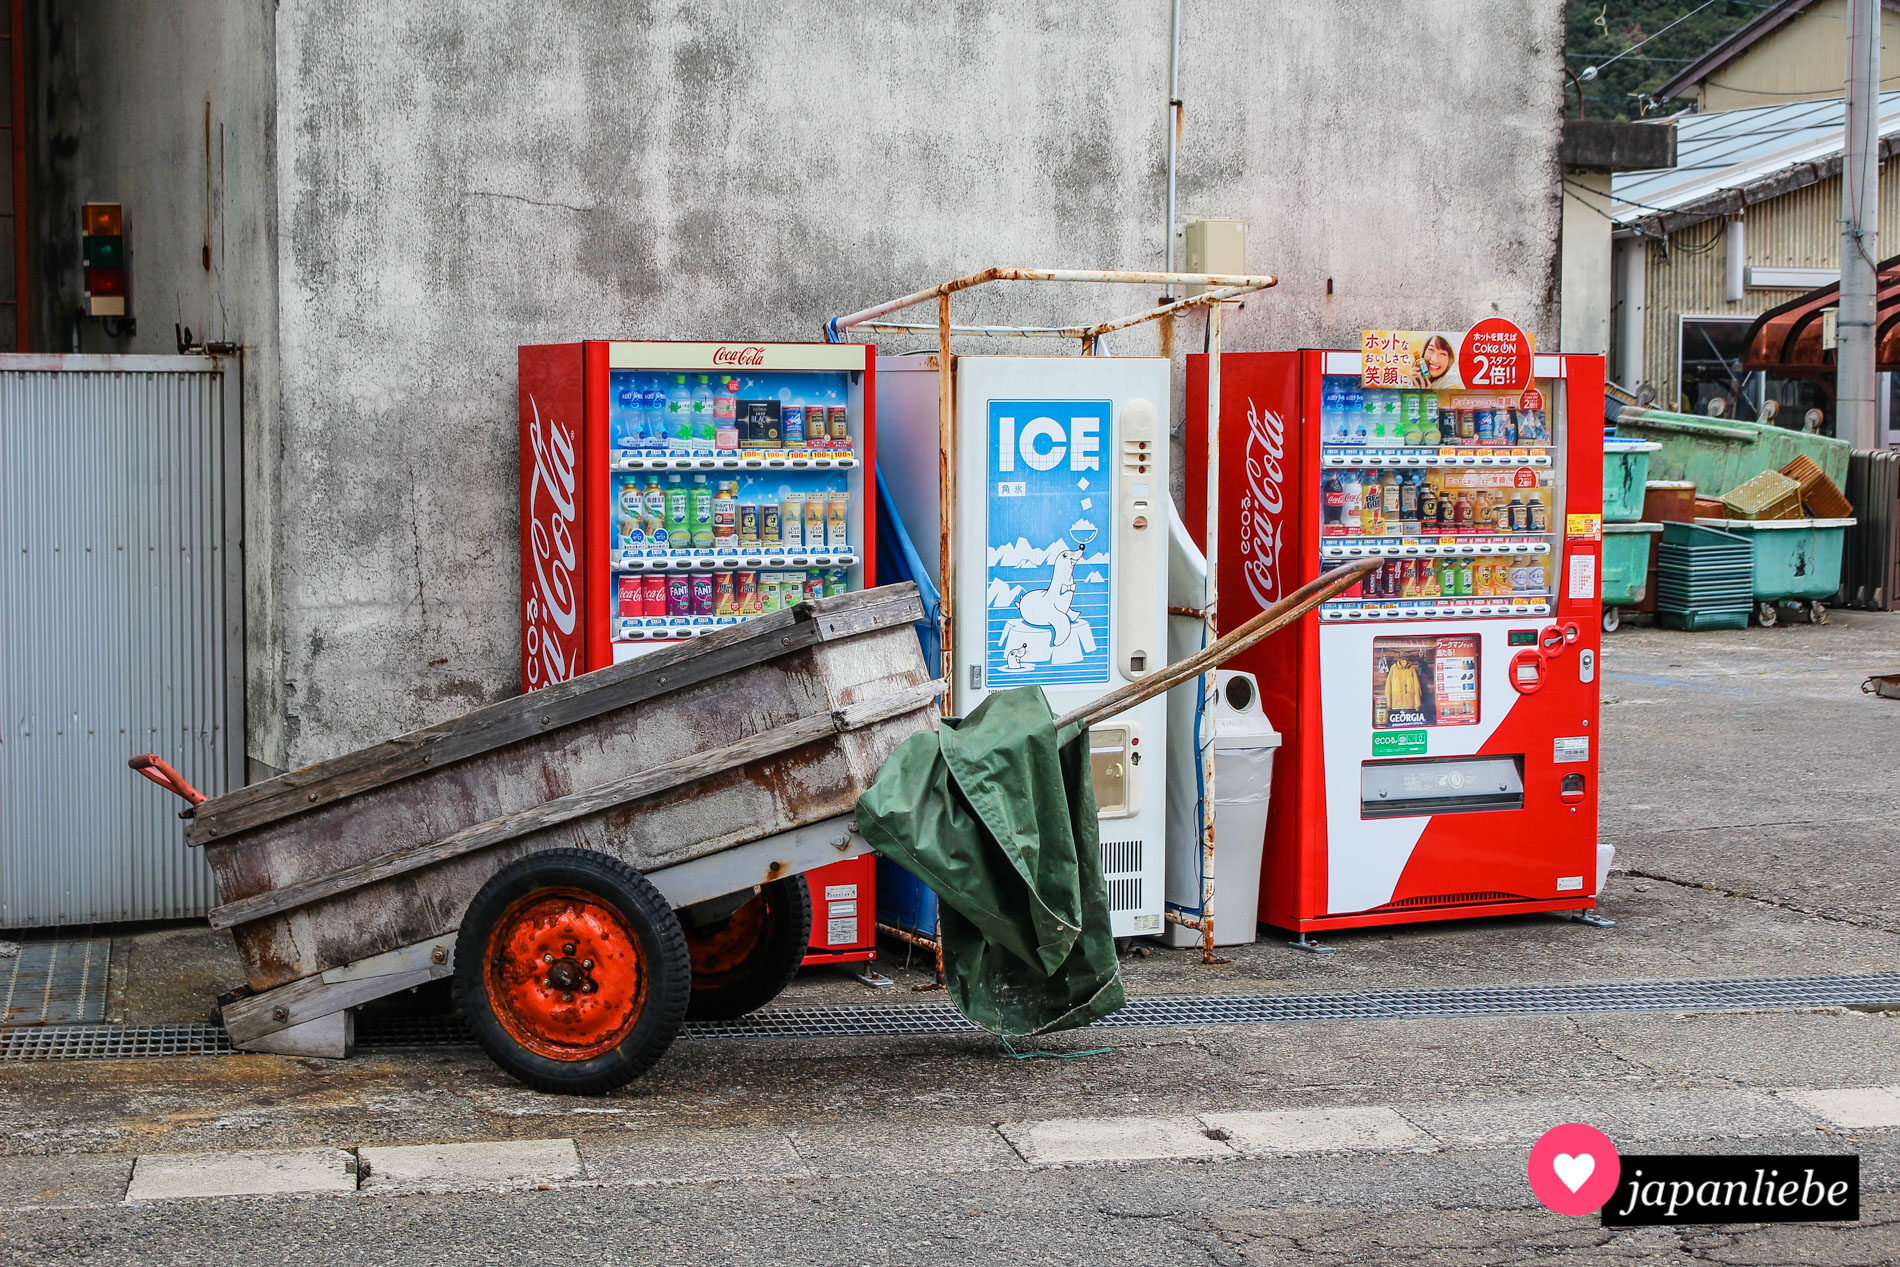 Japanische Getränkeautomaten sieht man selbst in den entlegensten Ecken.